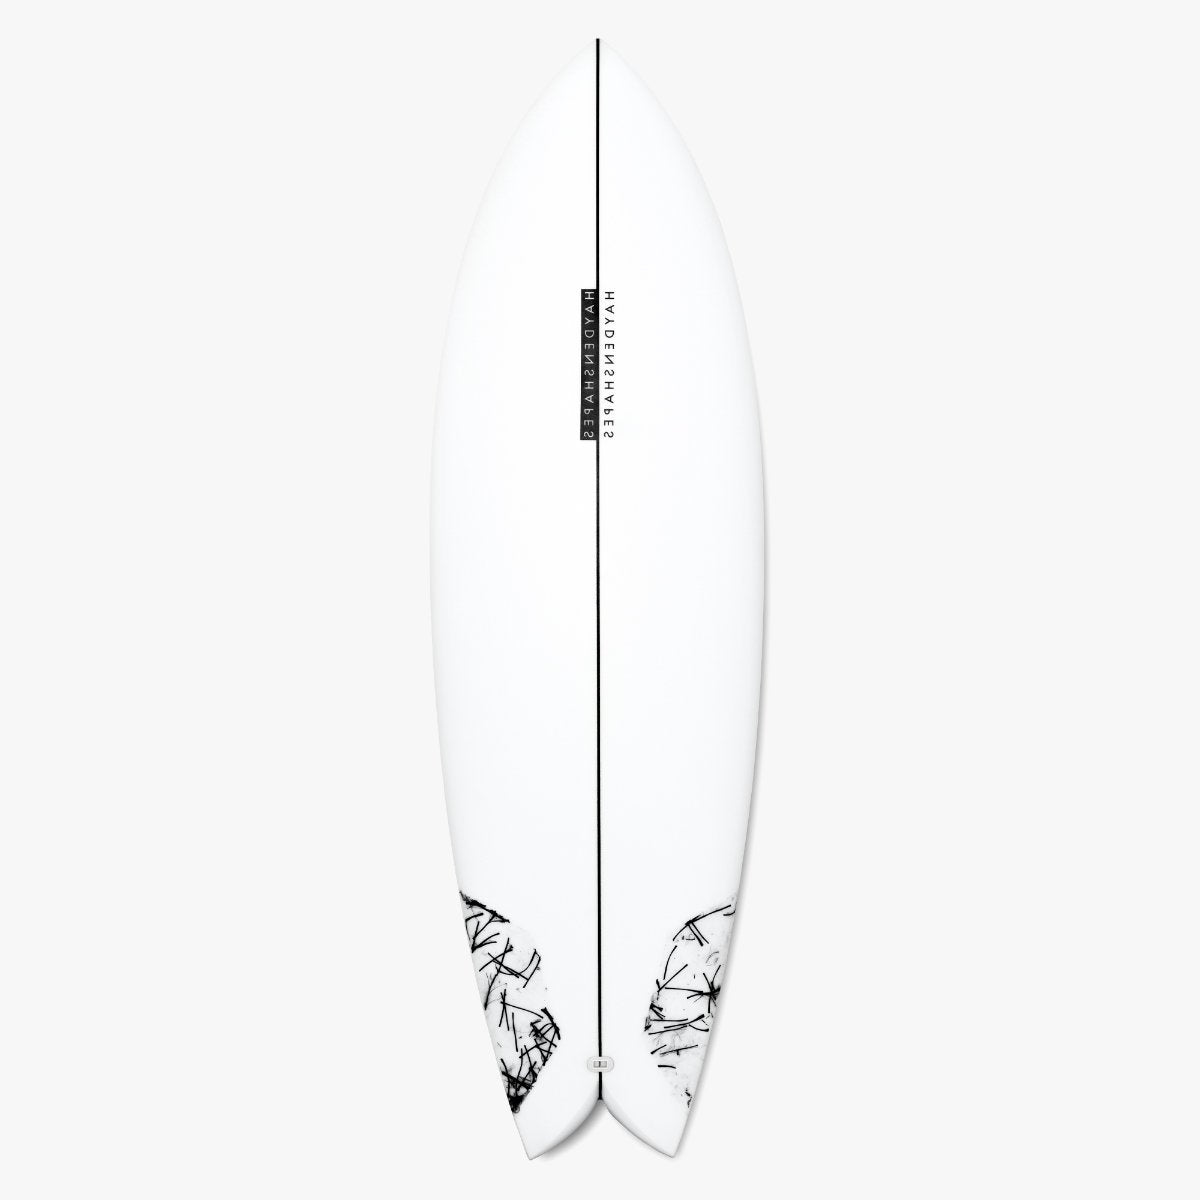 Haydenshapes surfboards - Hypto Kryto - Craig Anderson - Great 